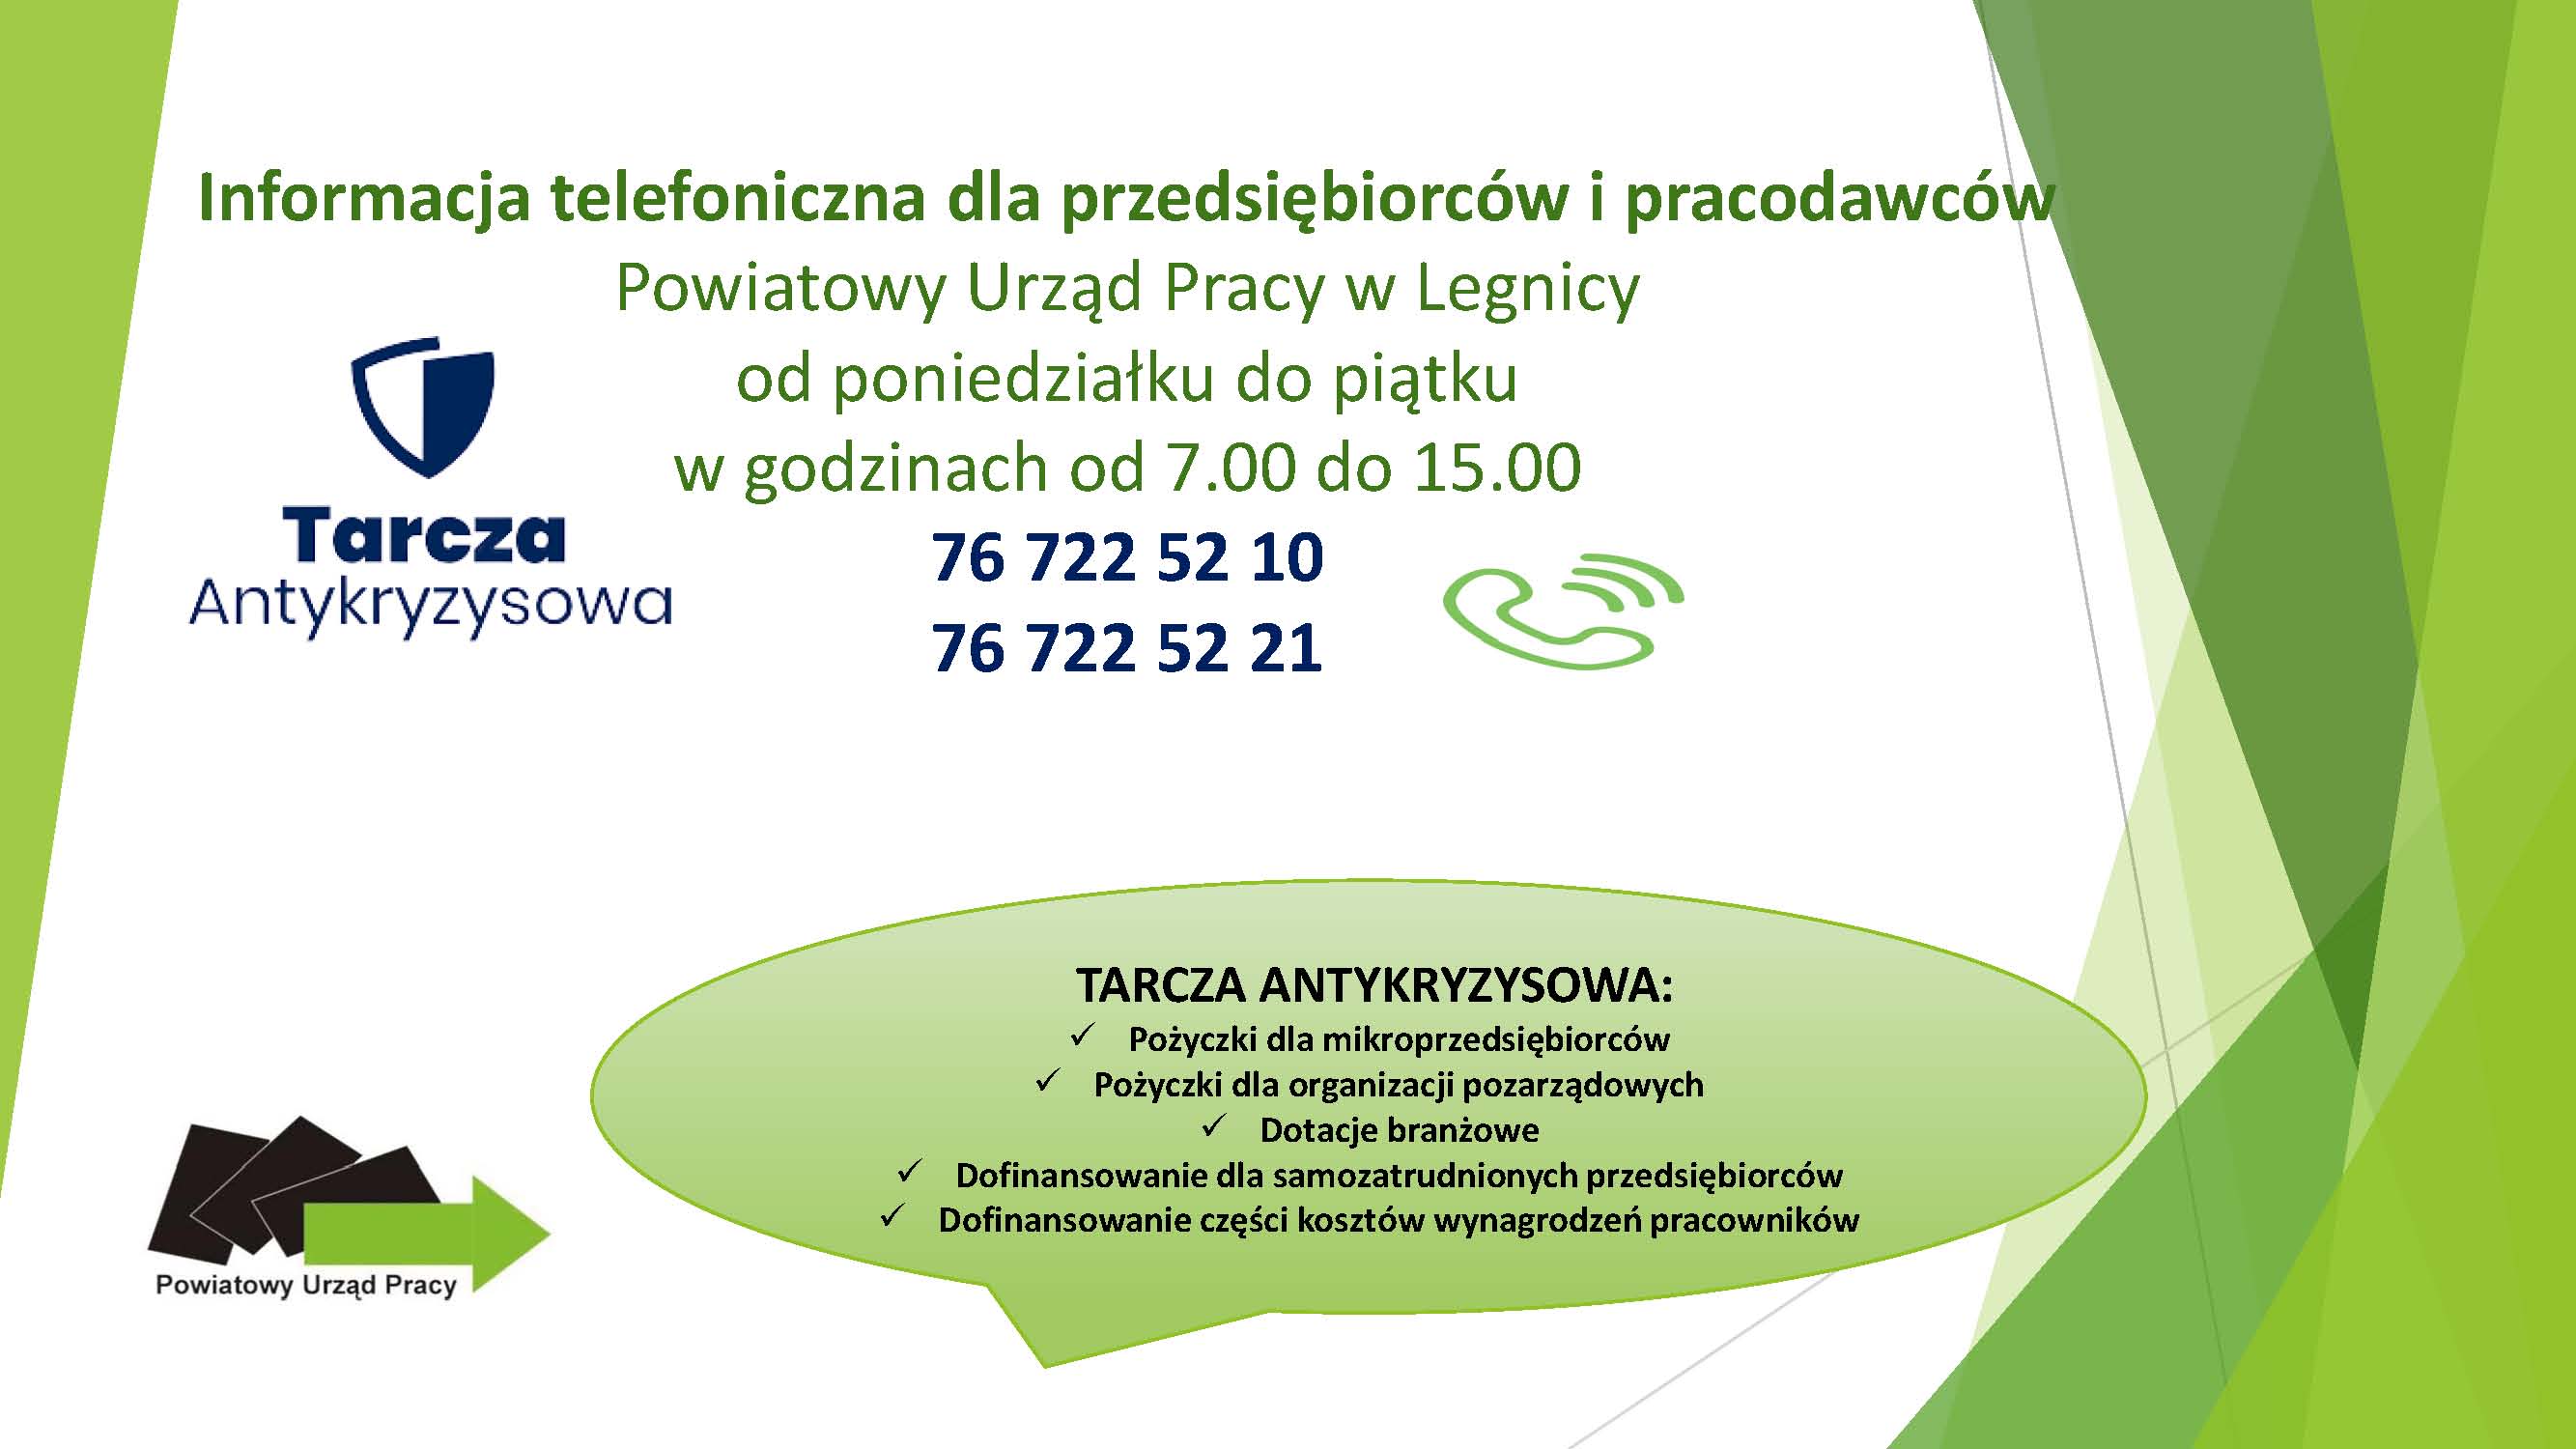 (Grafika) PUP Legnica: informacja telefoniczna dla przedsiębiorców i pracowników, tel 76 722 52 10 lub: 76 722 52 21